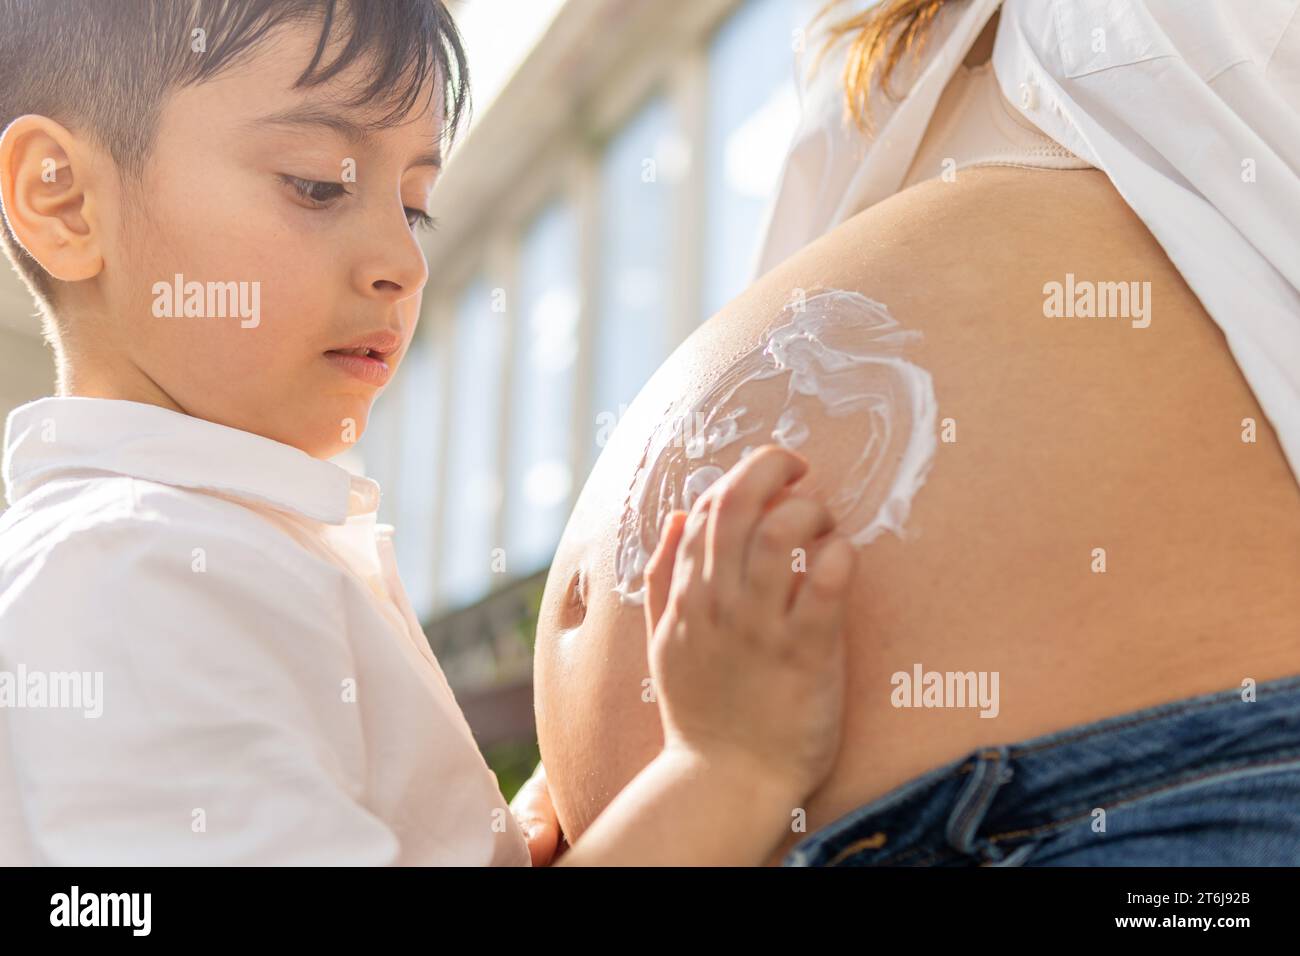 Junge, der Emoji mit Mosturizer auf dem Bauch der schwangeren Frau zeichnet Stockfoto